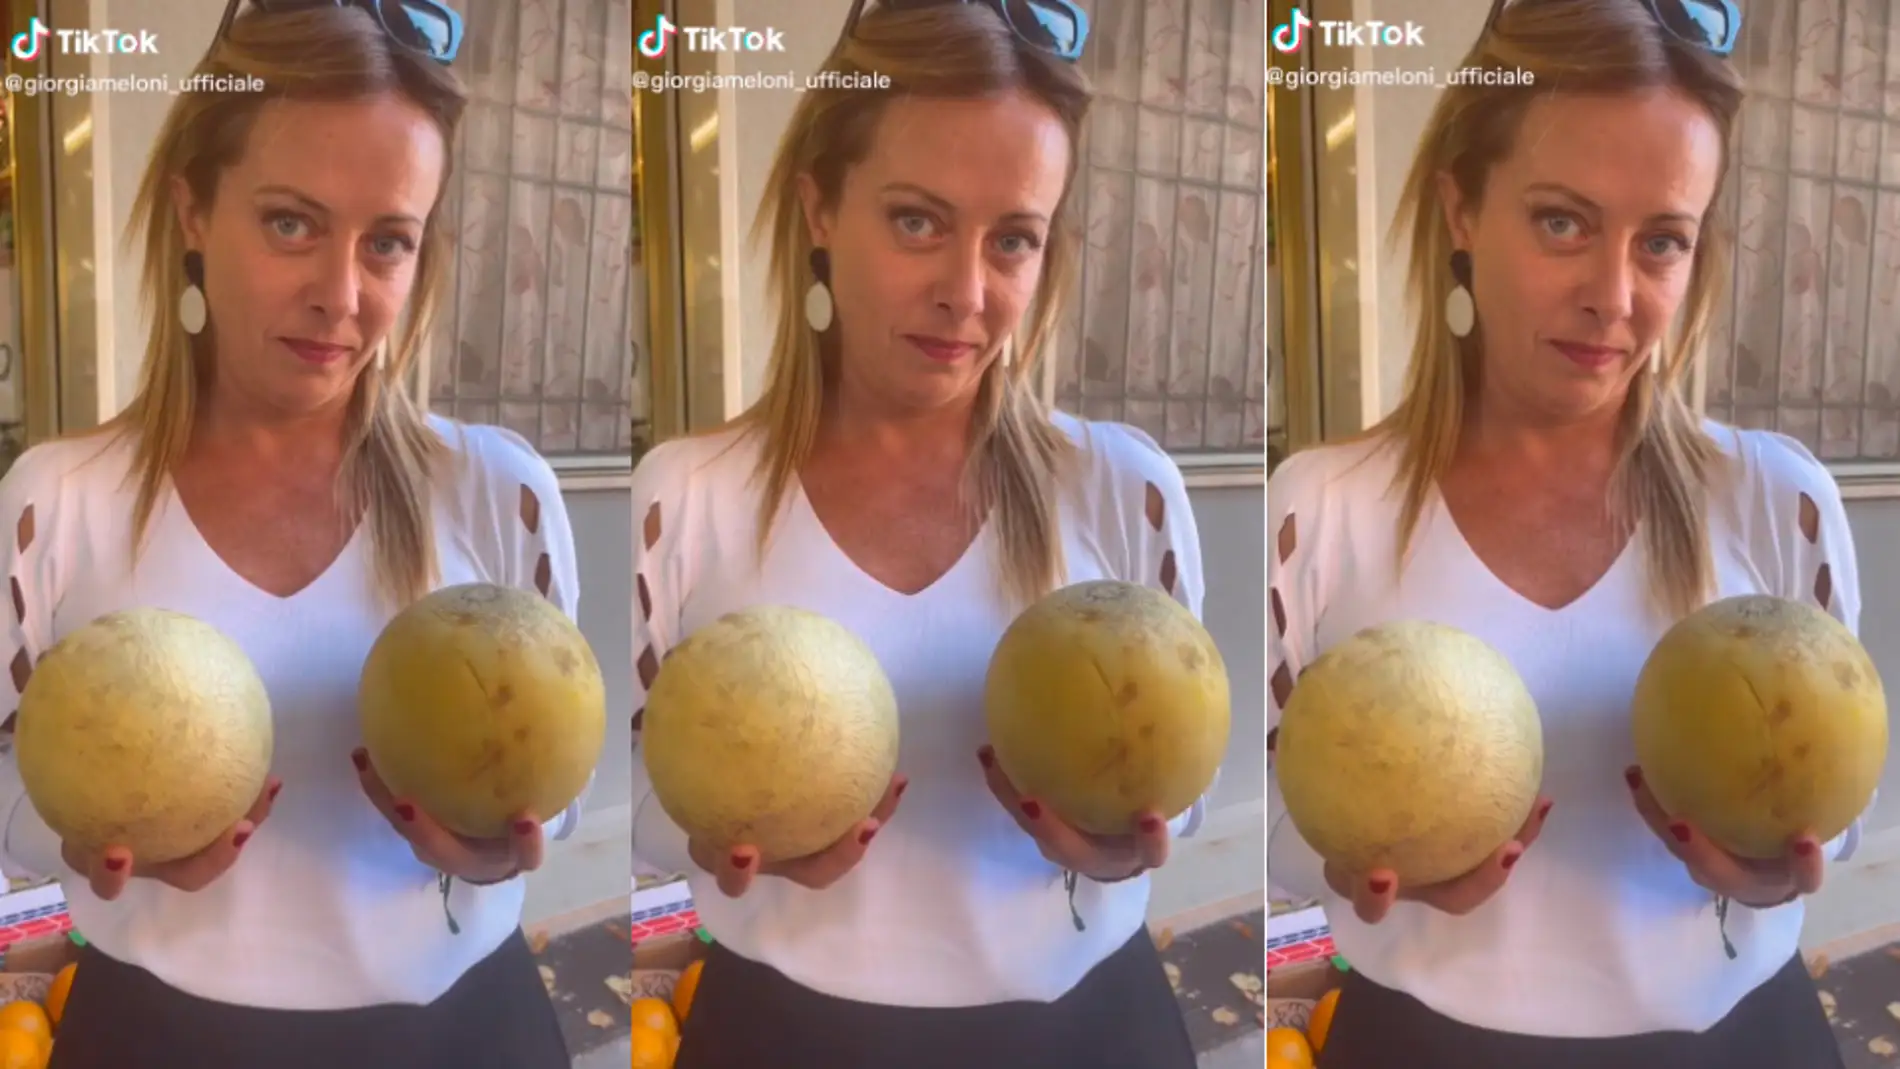 El vídeo con “dos melones” que publicó Giorgia Meloni durante la jornada electoral